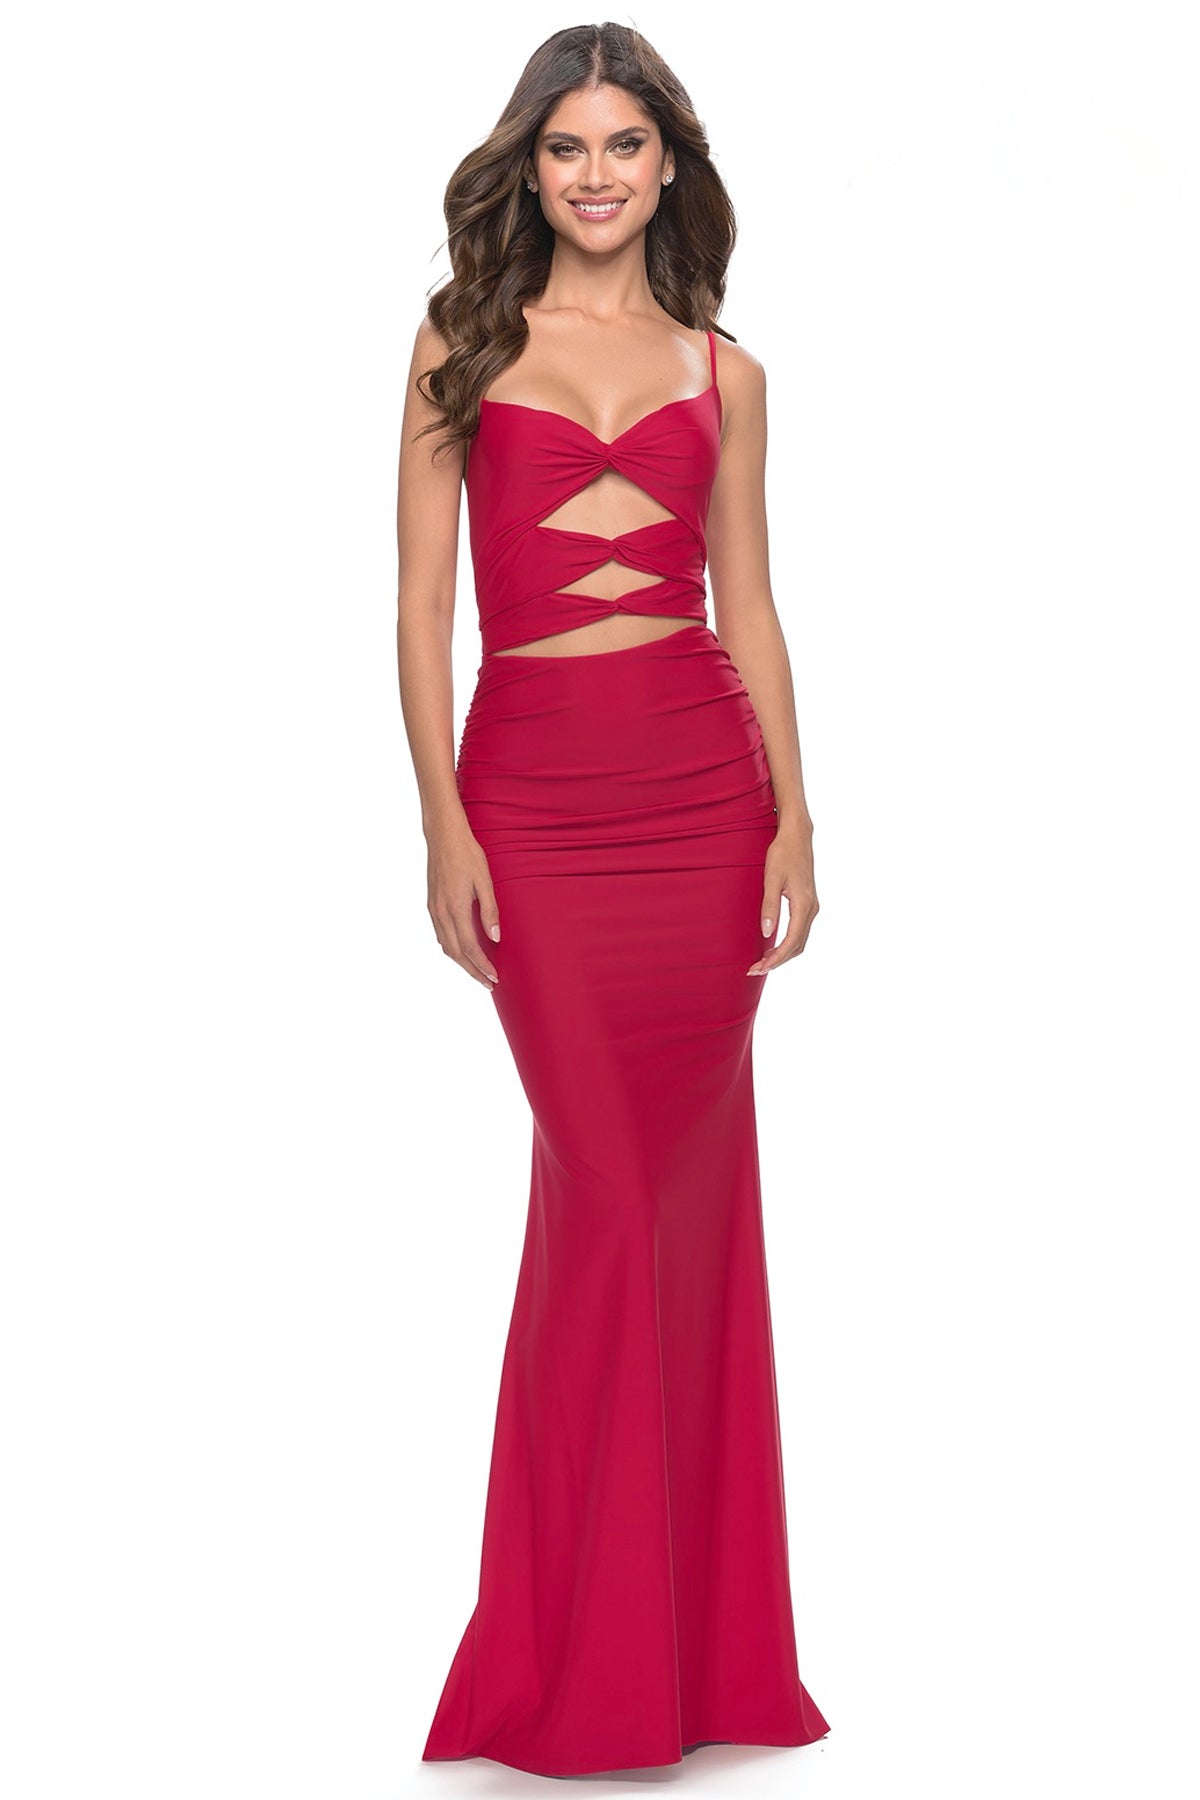 La Femme Red Party Dress